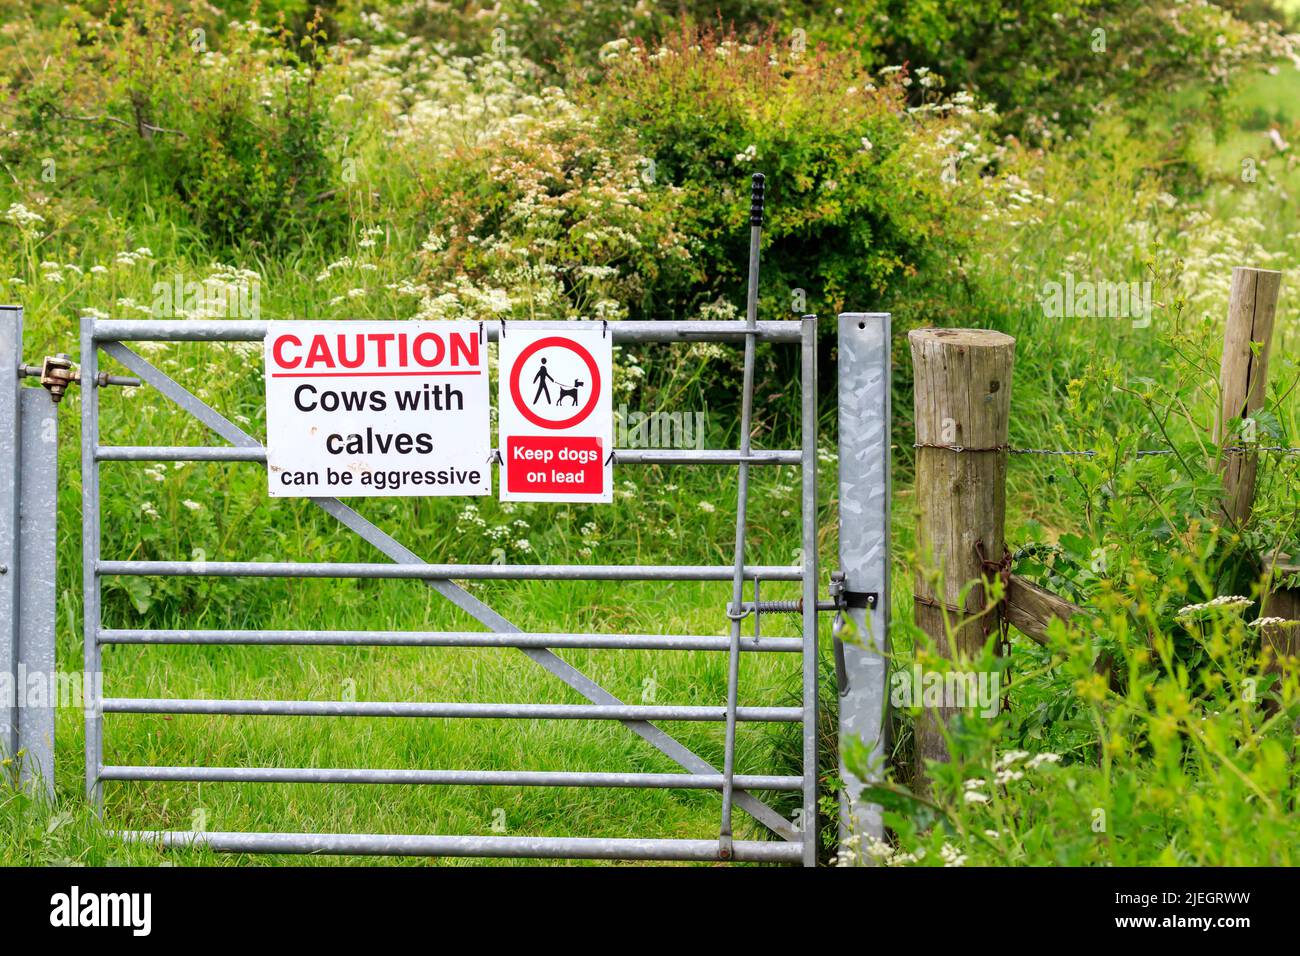 Metallfußweg Tor mit einem Warnschild Warnung vor Kühen mit Kalb und halten Hunde an der Leine Stockfoto